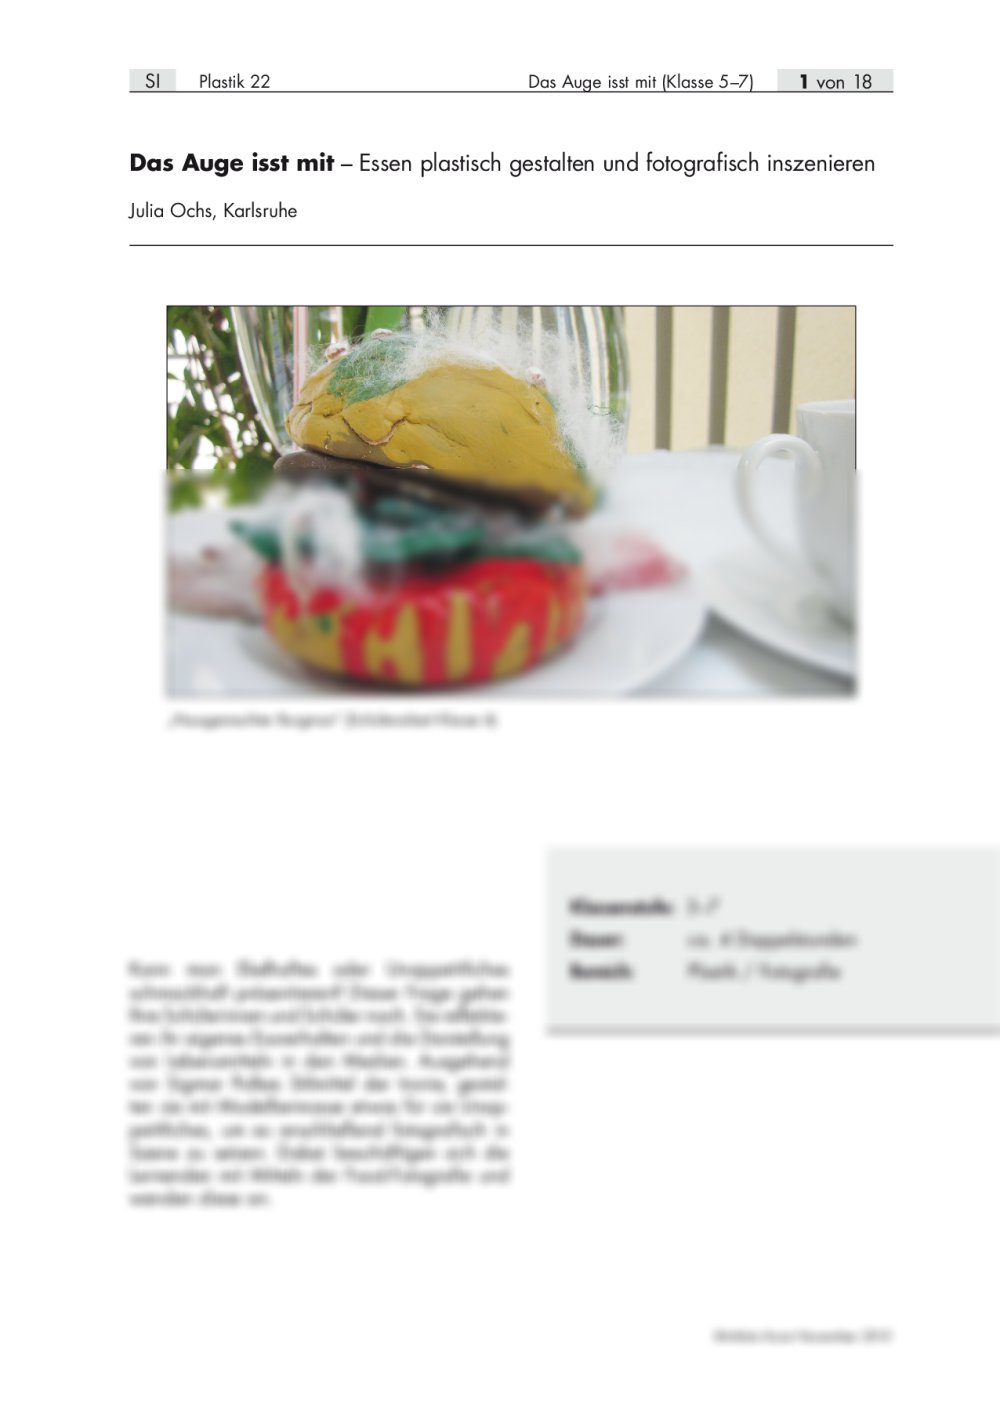 Essen plastisch gestalten und fotografisch inszenieren - Seite 1